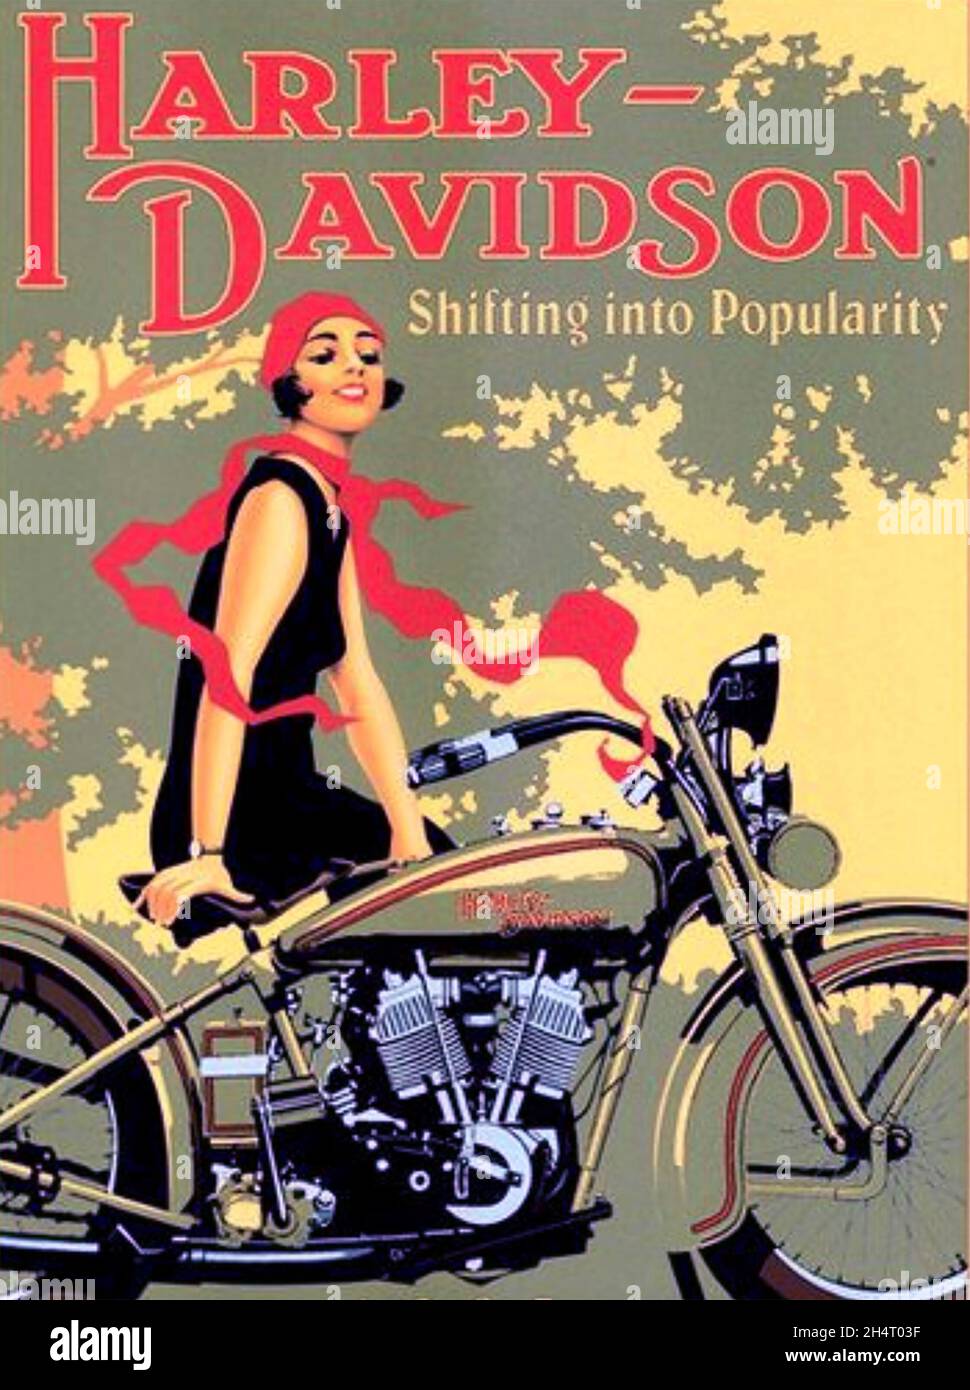 HARLEY-DAVIDSON constructeur américain de moto.Affiche environ 1930 Banque D'Images